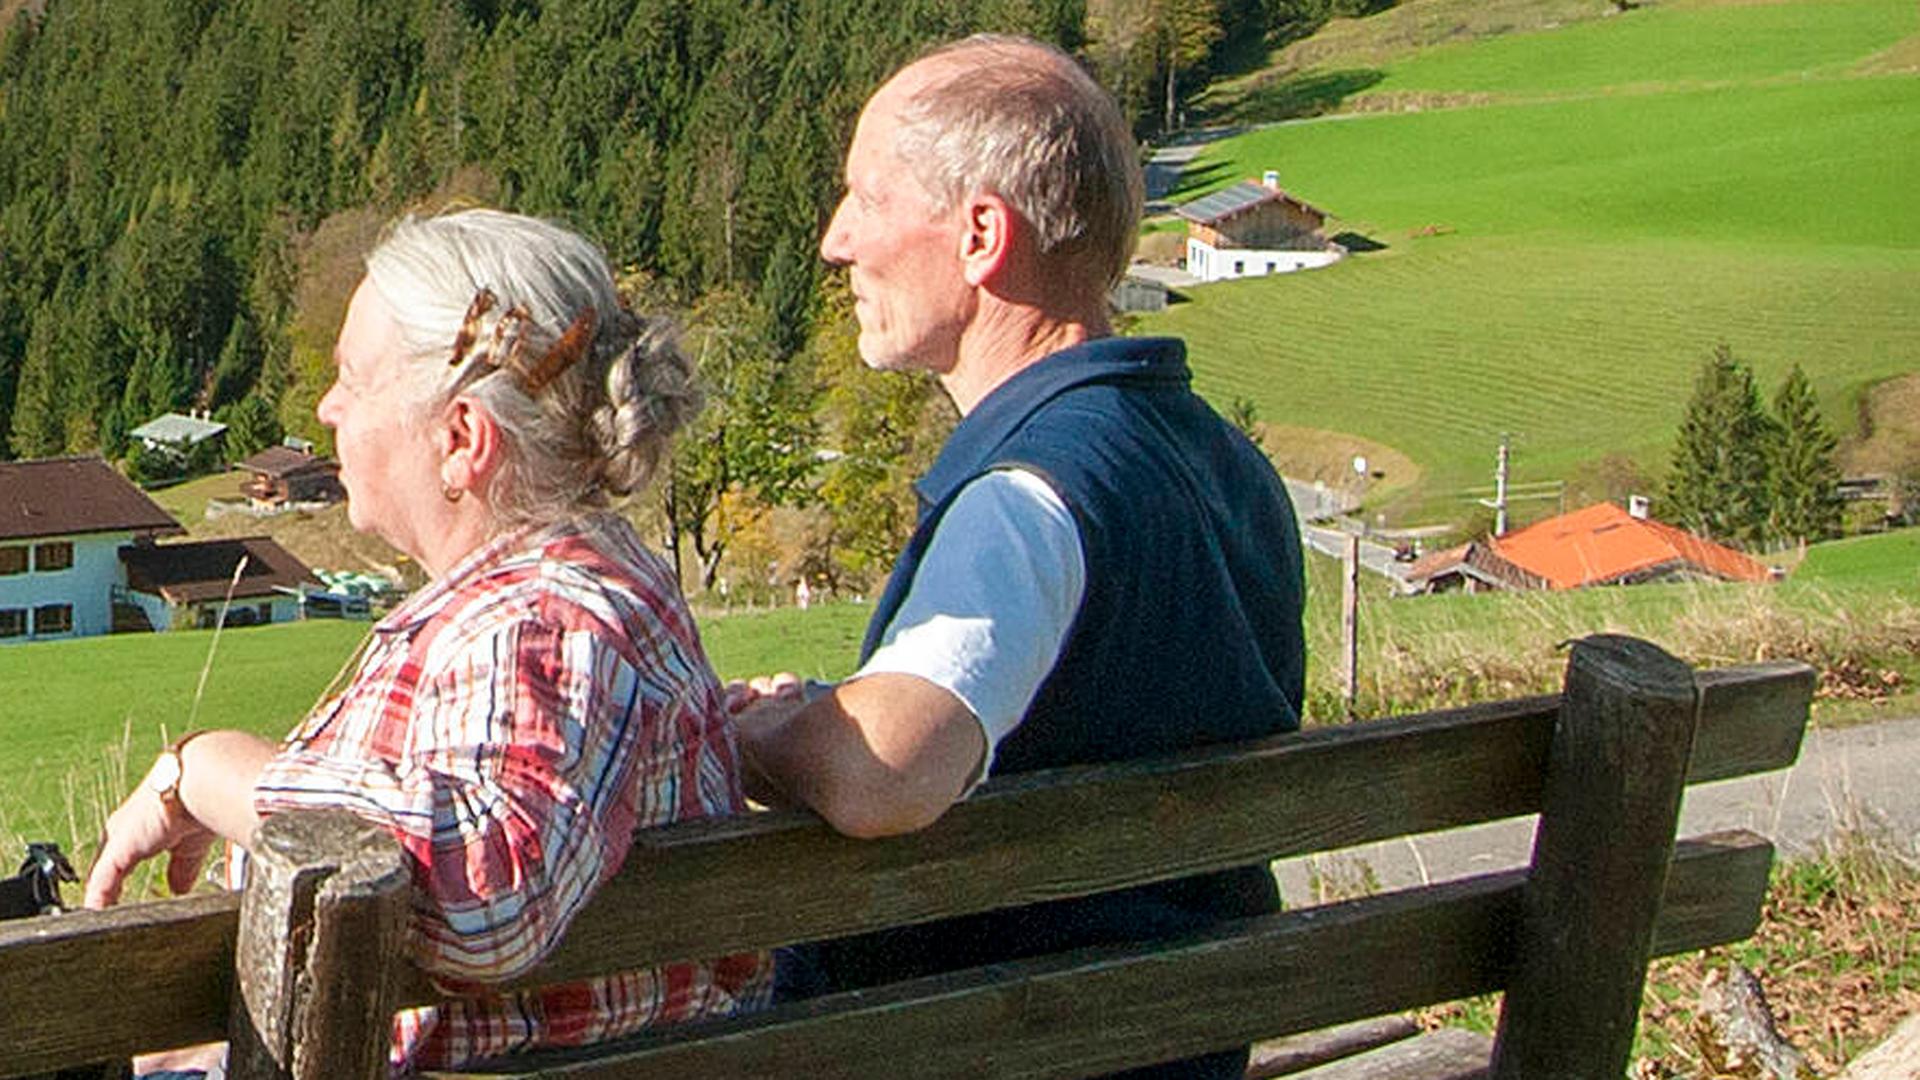 Das bayerische Ehepaar Anna und Karl Fritz haben keinen Zweifel an ihrer "gottgegebenen sozialen Stellung". Zu sehen: Ein älteres Ehepaar auf einer Bank. 